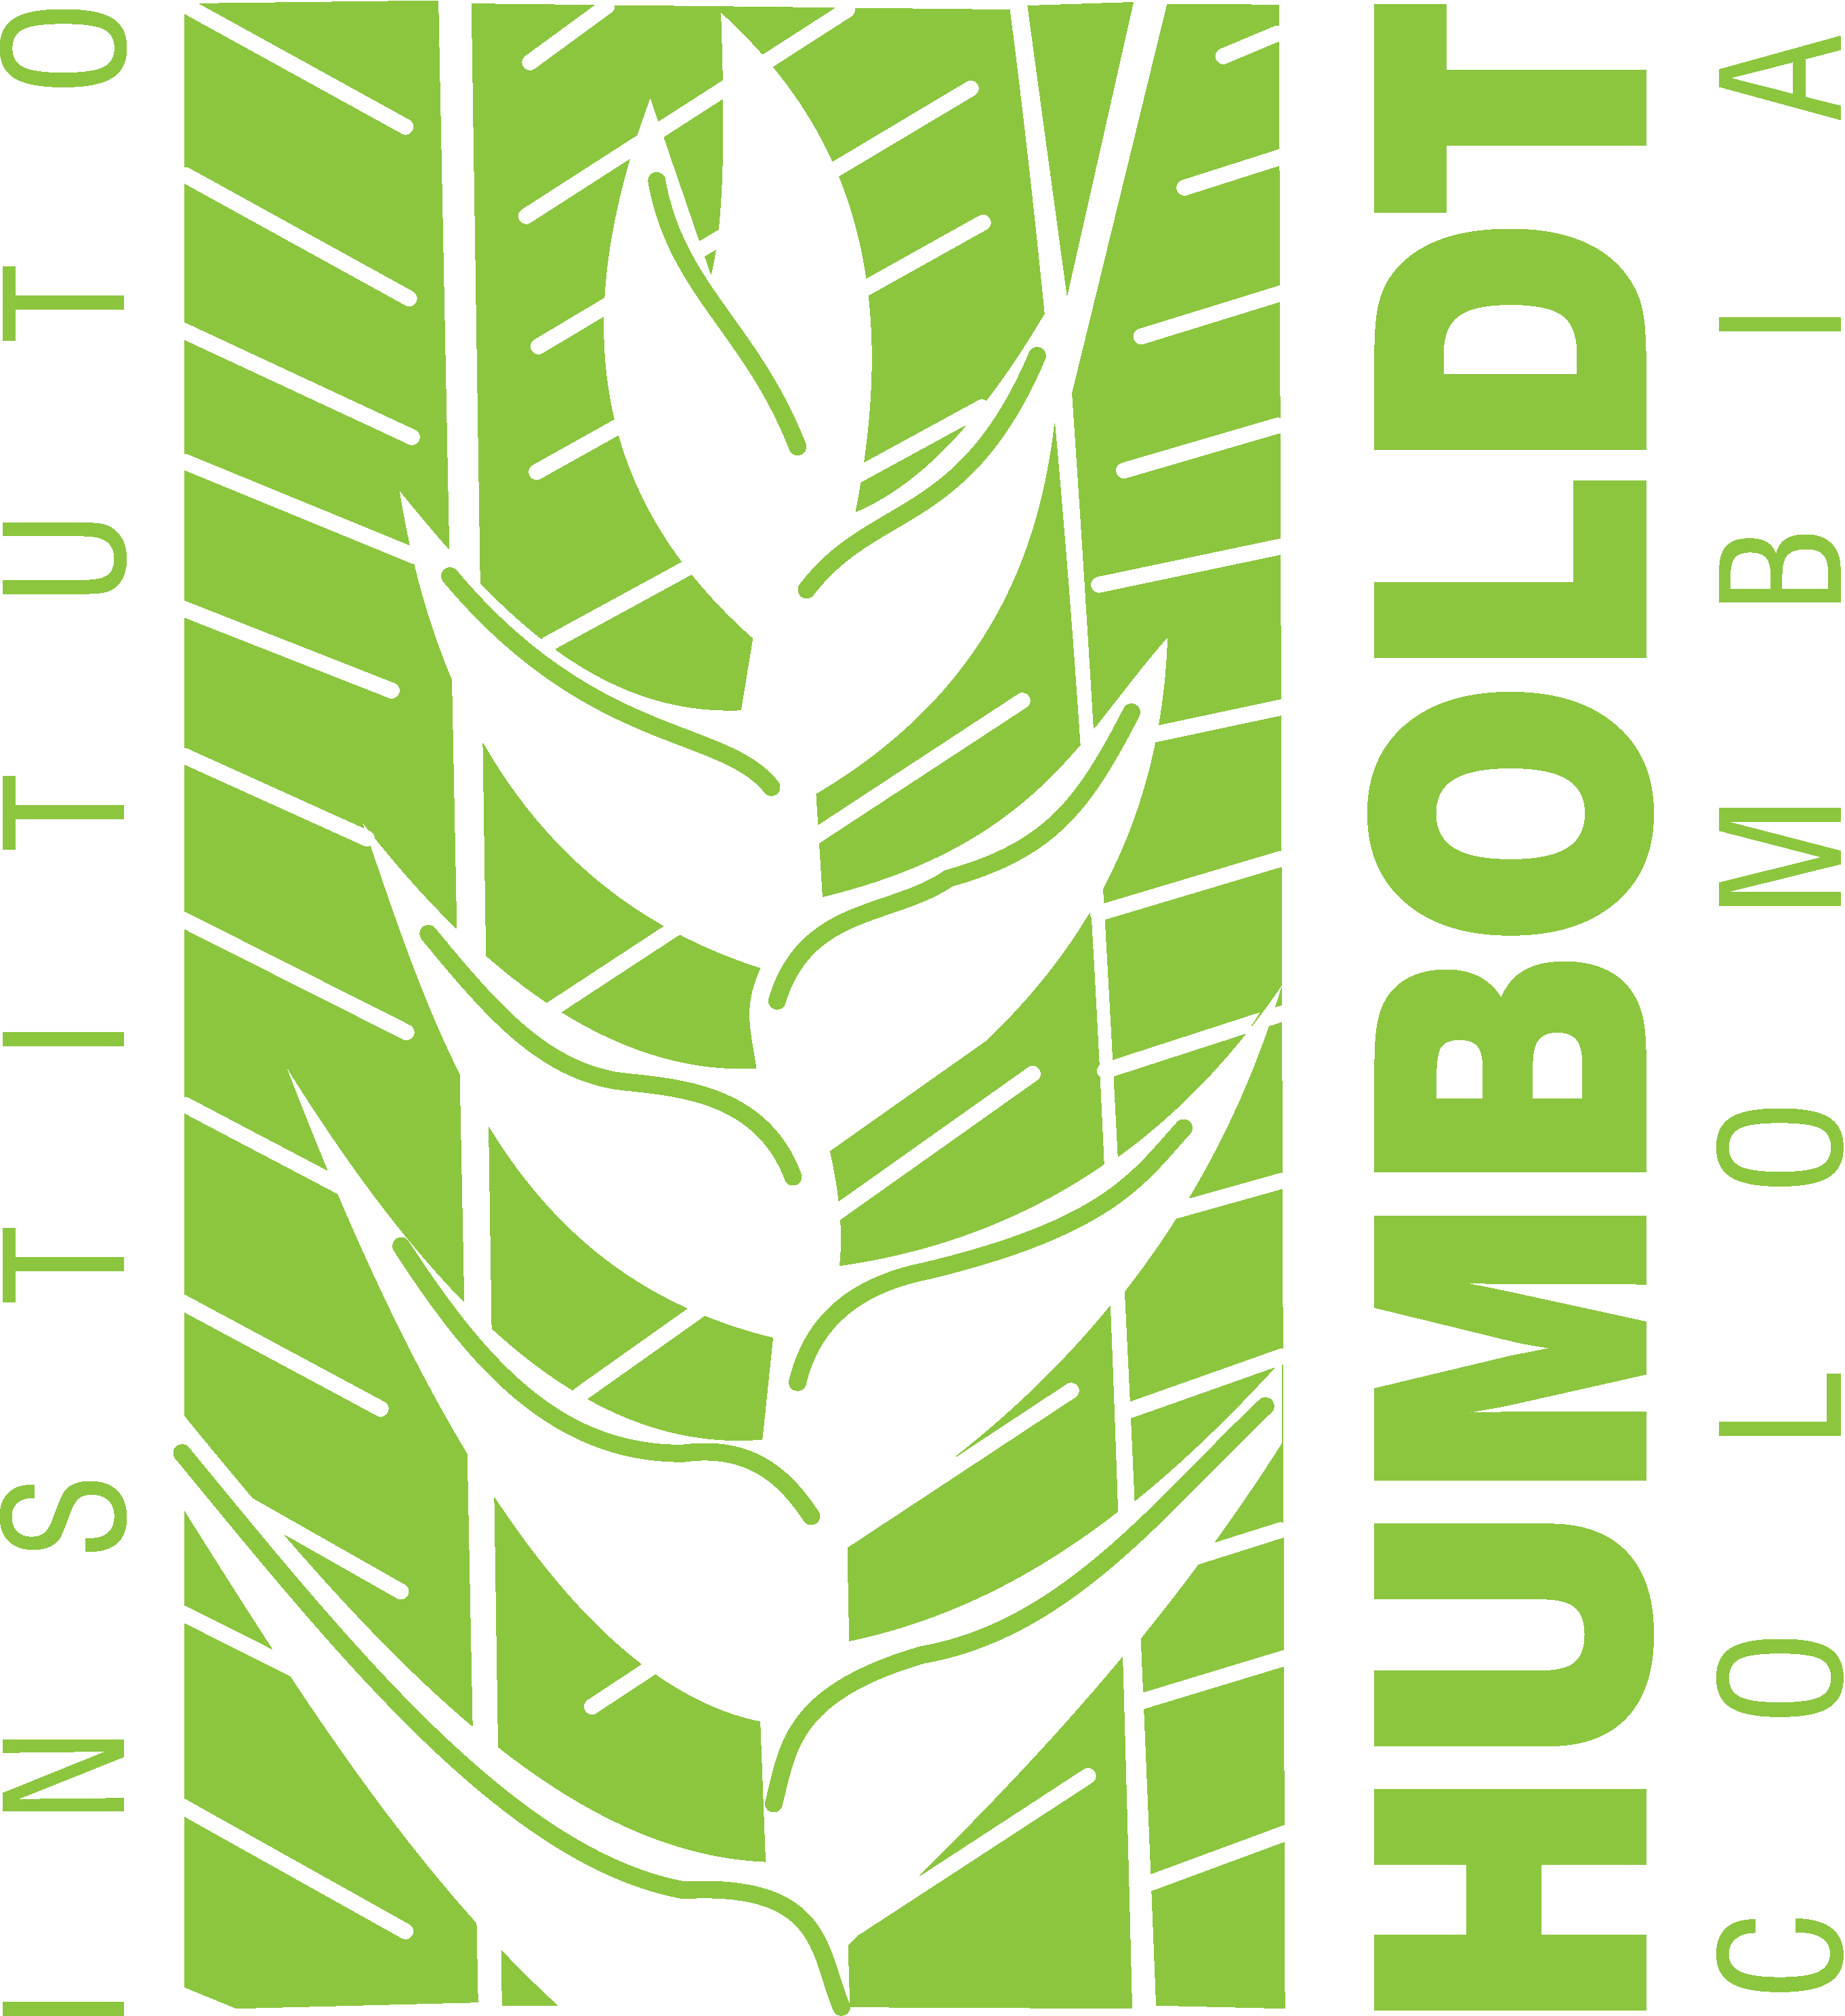 Humboldt Institute